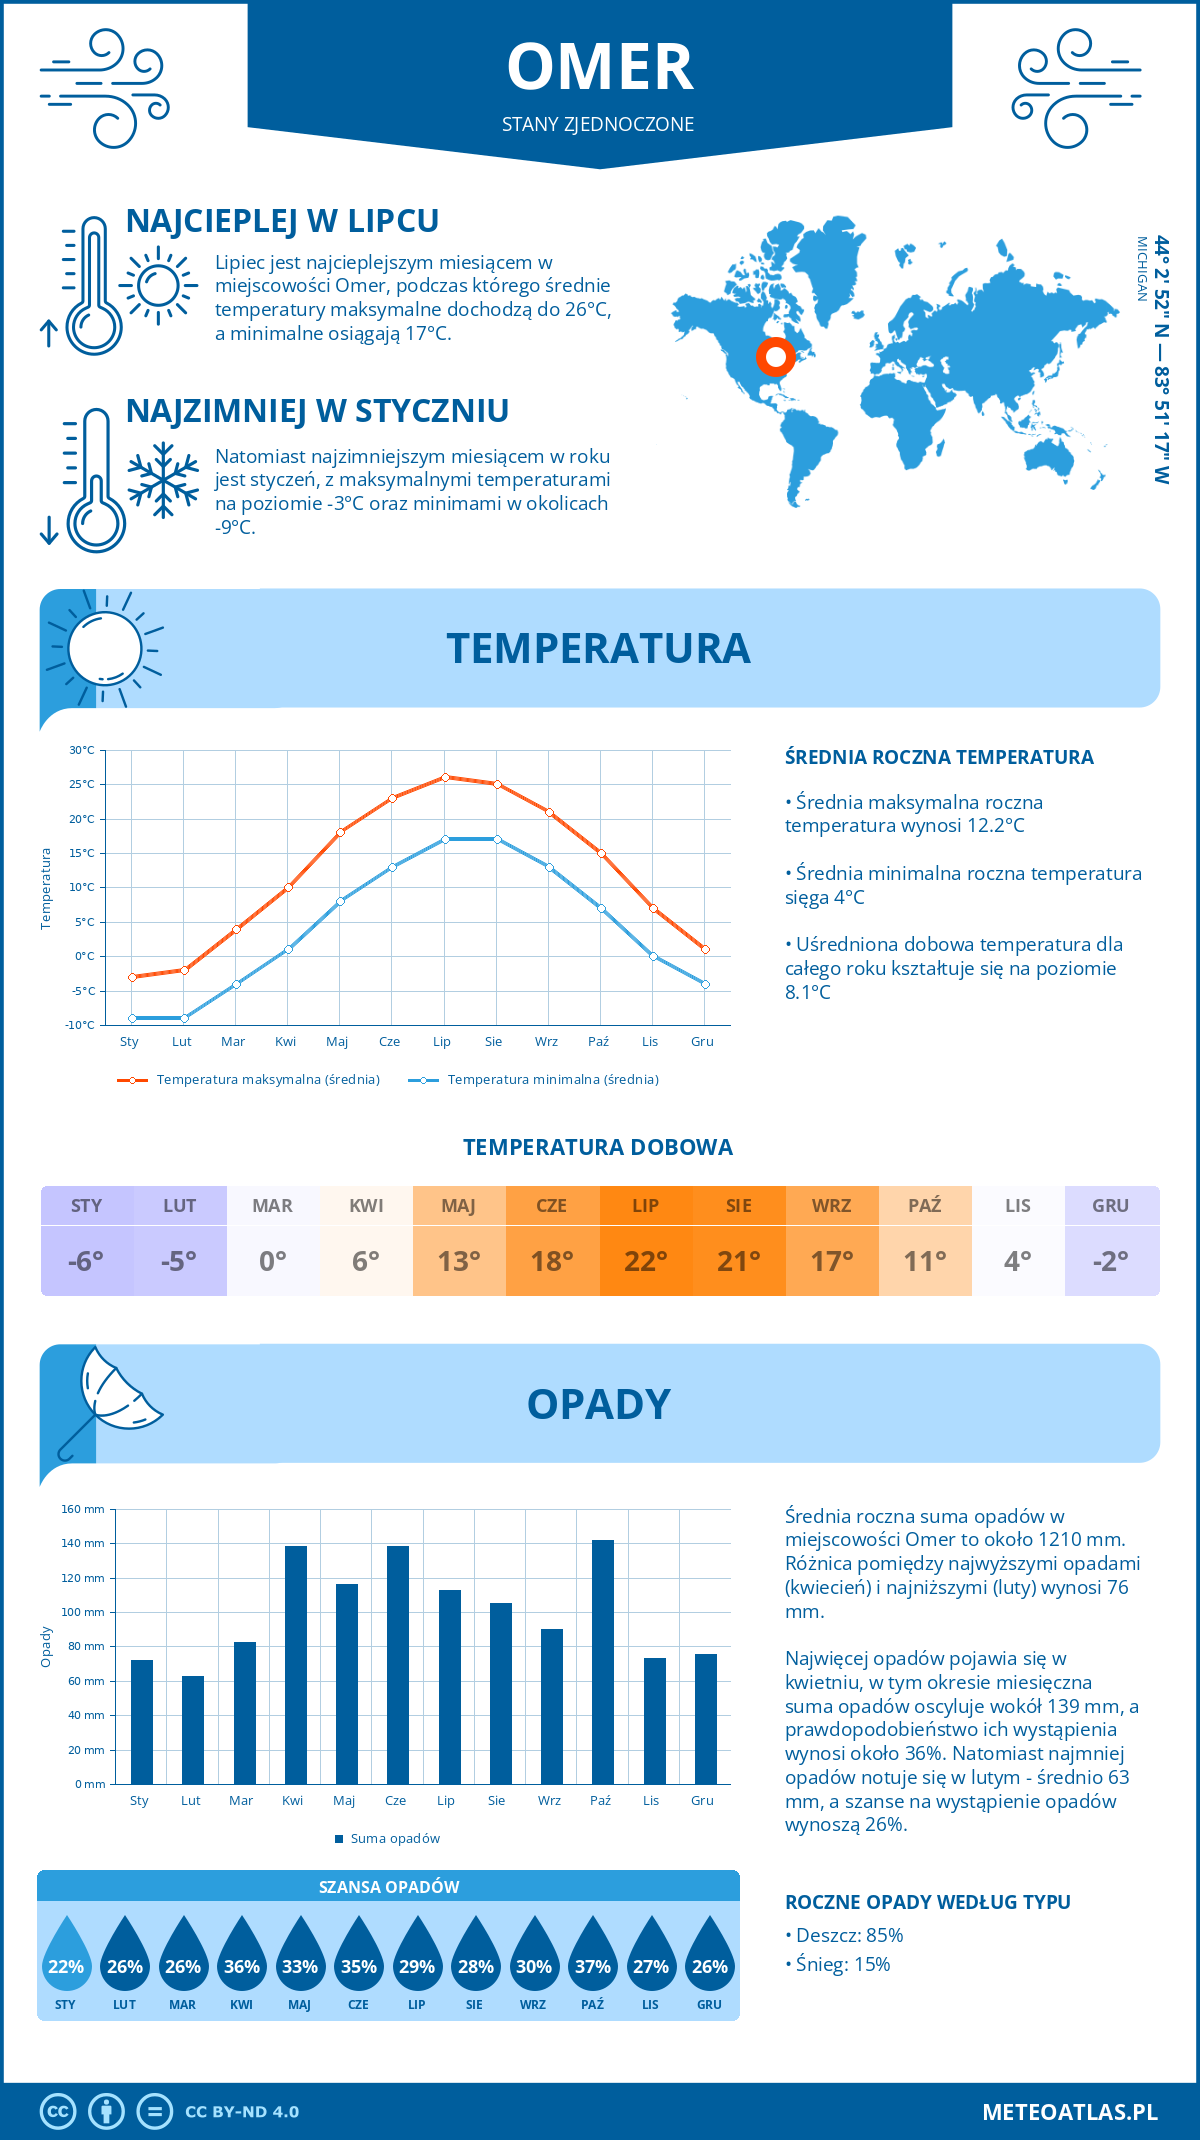 Pogoda Omer (Stany Zjednoczone). Temperatura oraz opady.